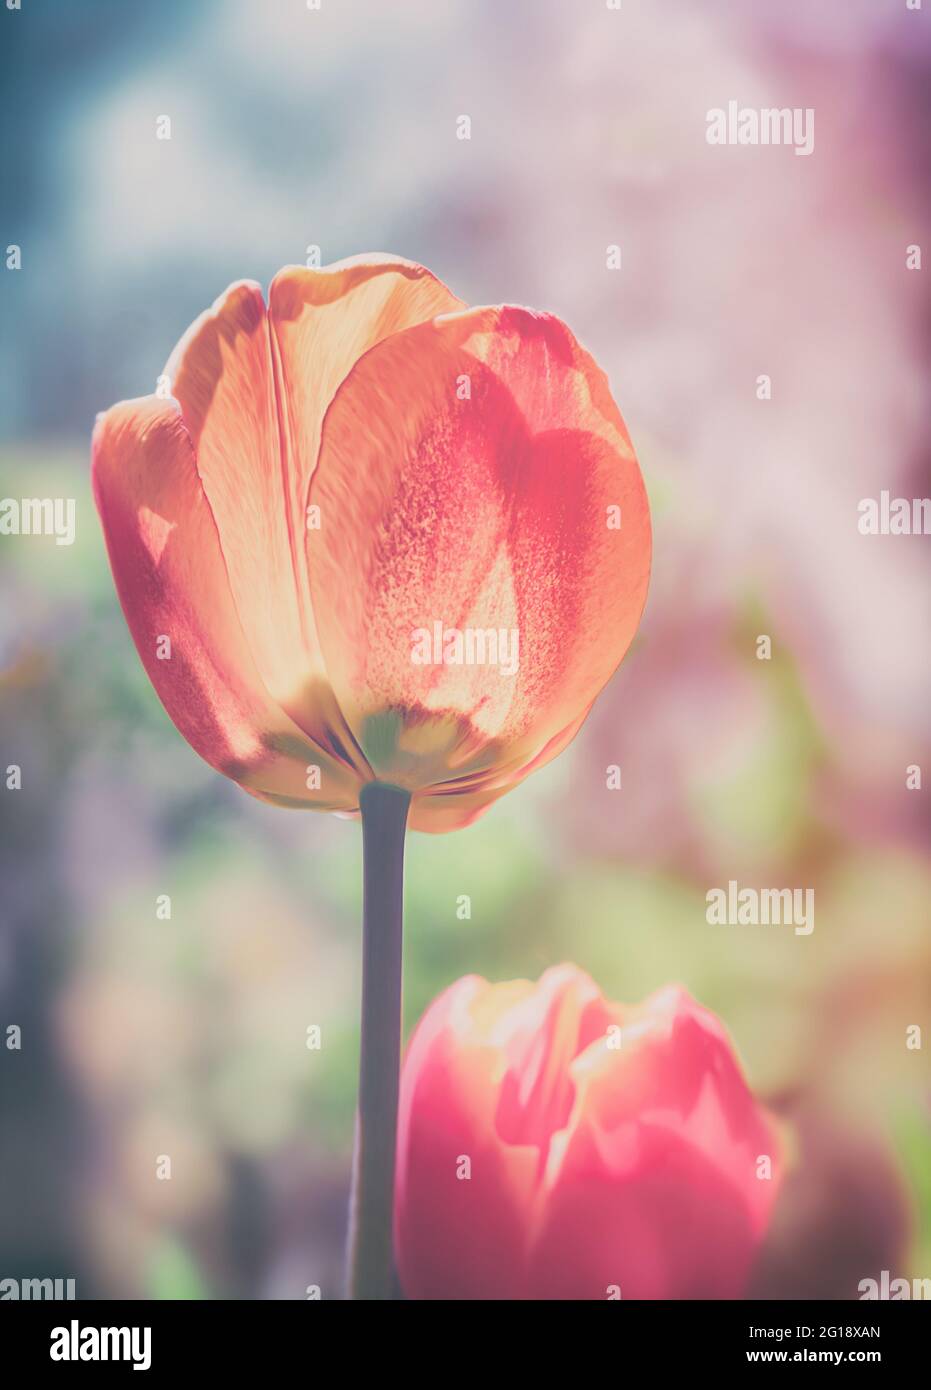 Stimmungsvolles Nahaufnahme einer Tulpe im farbenfrohes Blumenmeer aus Tulpen im Grugapark Essen - Blüten im Licht und Sonnenschein im Park. Foto de stock